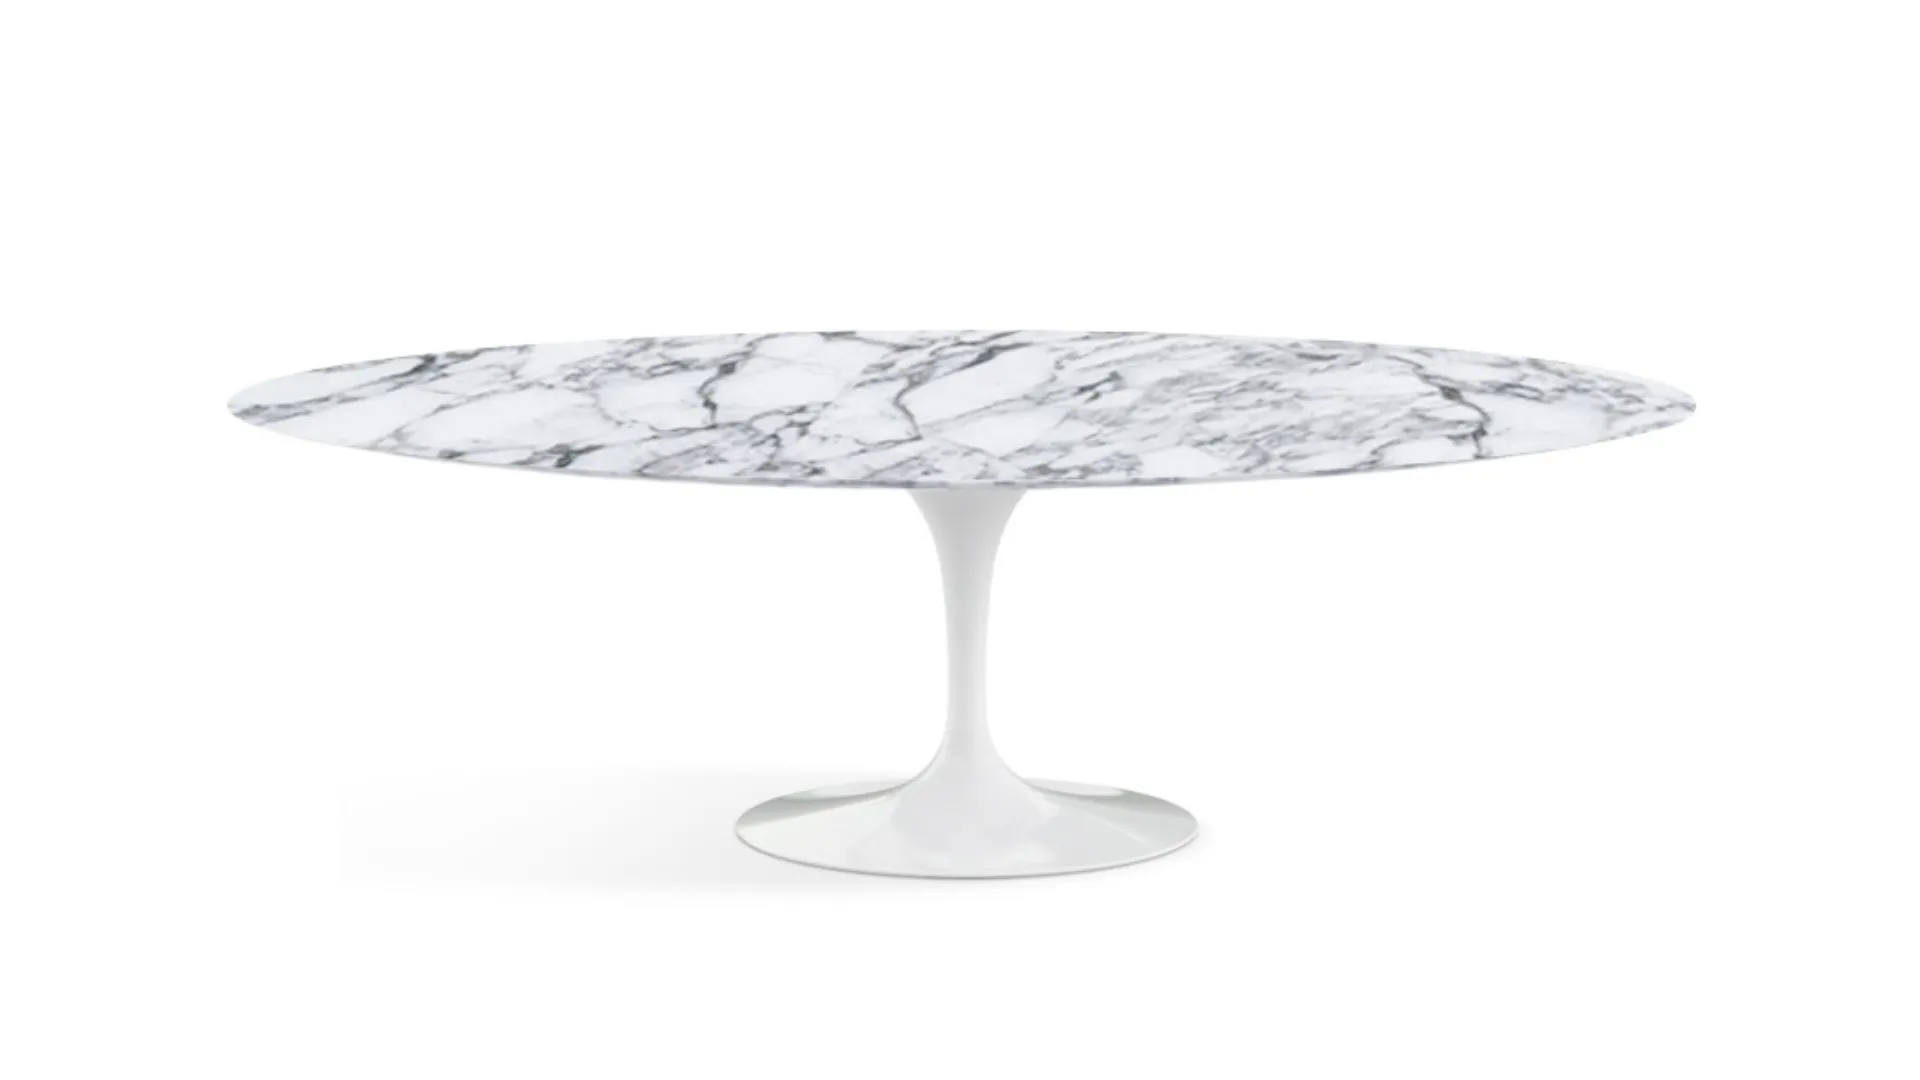 The Saarinen Dining Table - 96" Oval